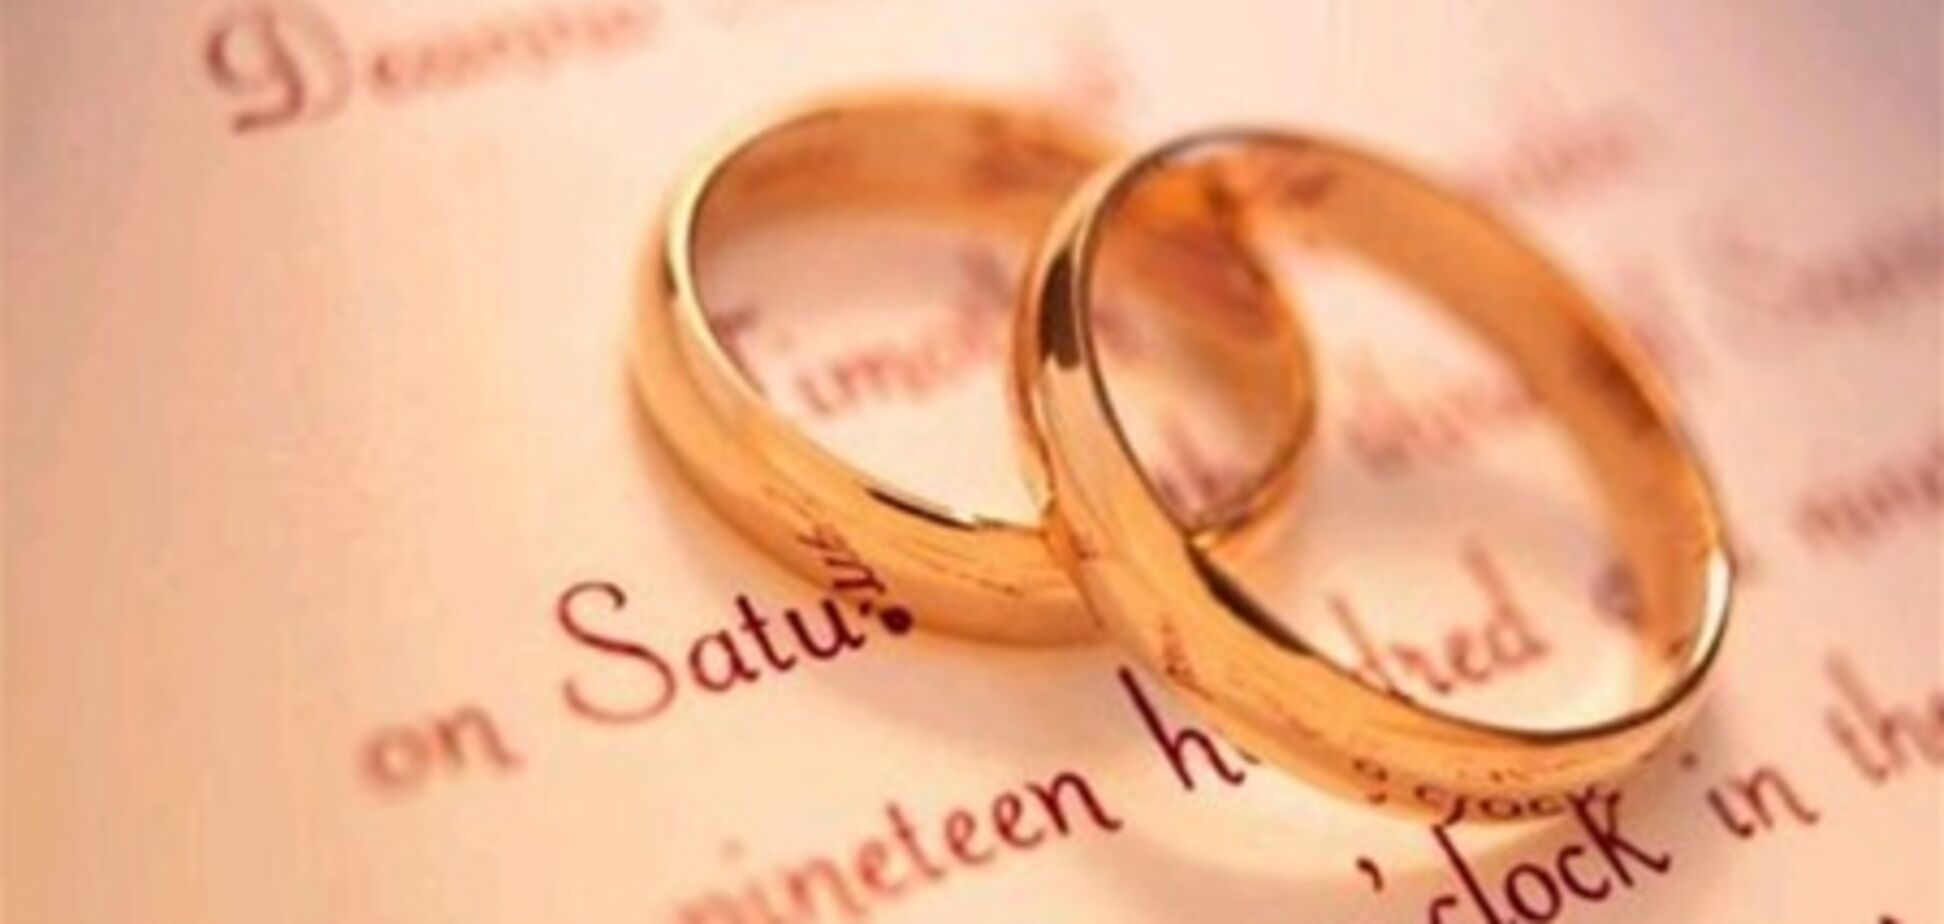 15-річна вийшла заміж за 90-річного дідуся в Саудівській Аравії